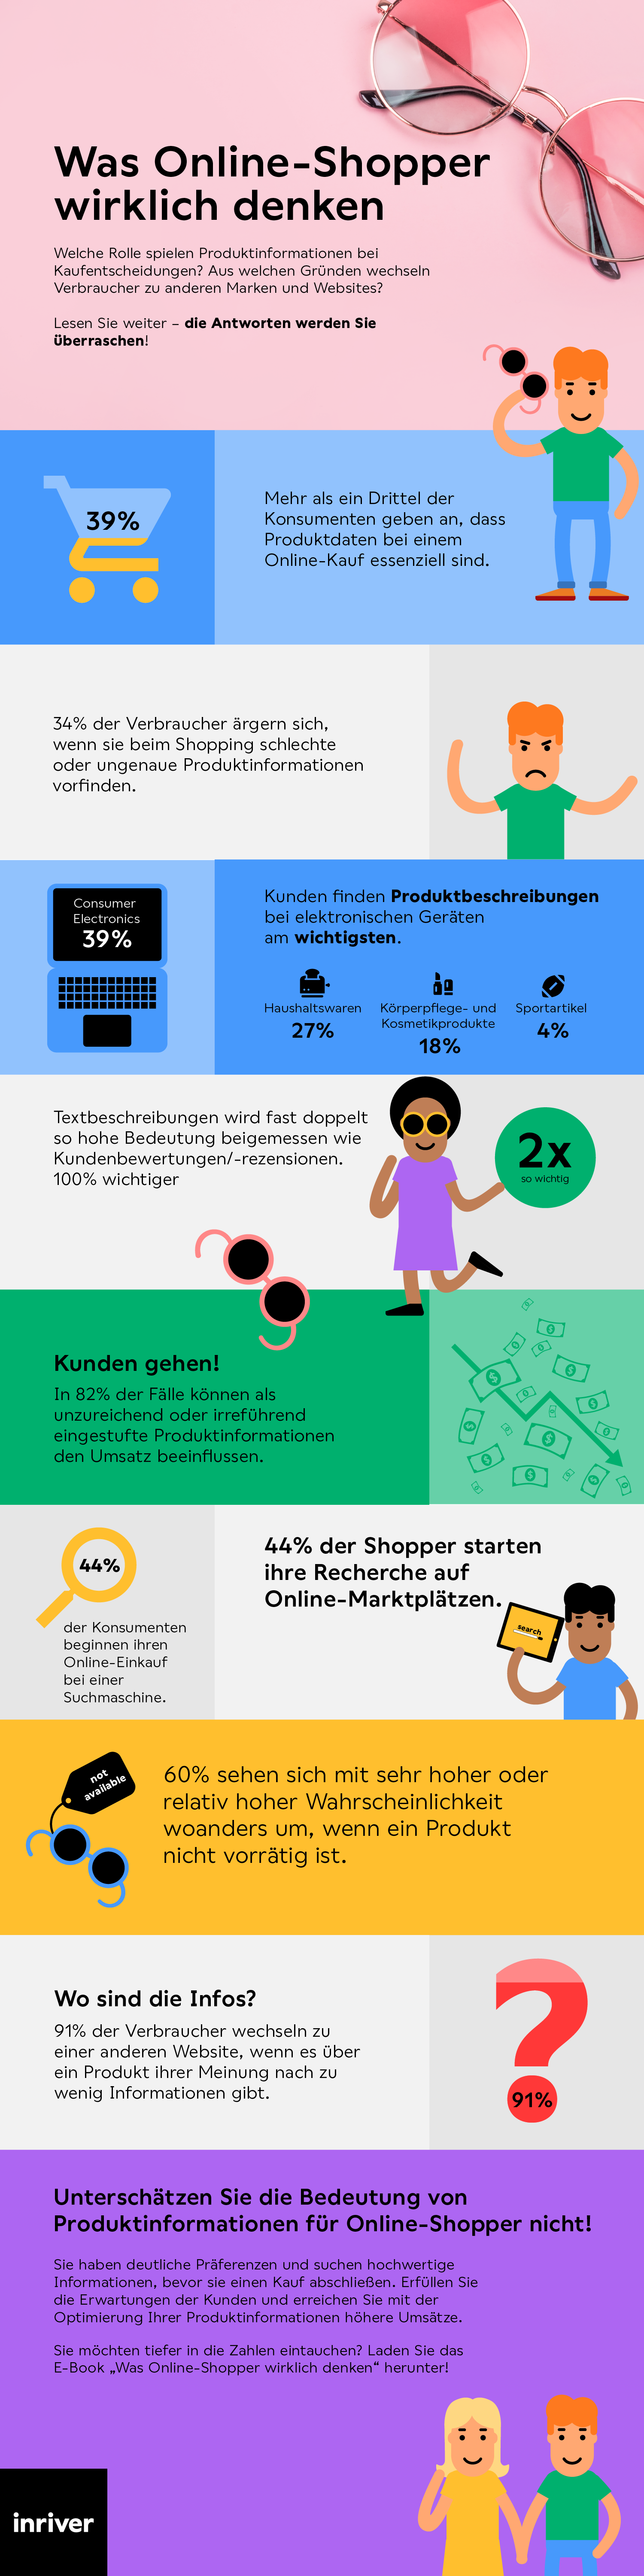 Was Online-Shopper wirklich denken- in Deutschland